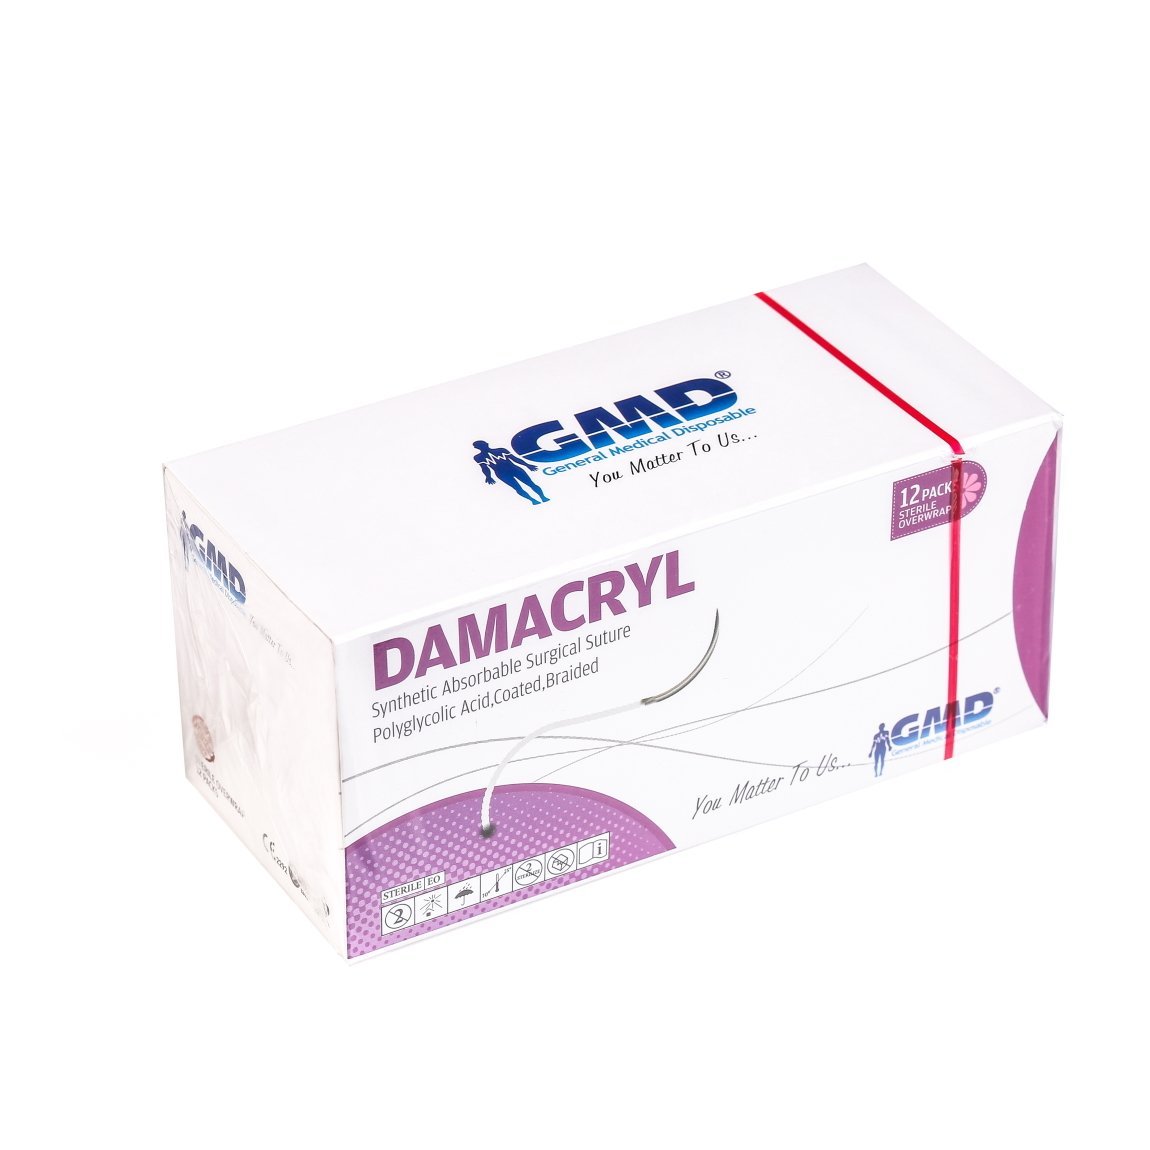 Damacryl Emilebilir Cerrahi Sütür - PGA İplik - USP: 1-90cm - 1/2 Daire 40 mm - Yuvarlak İğne